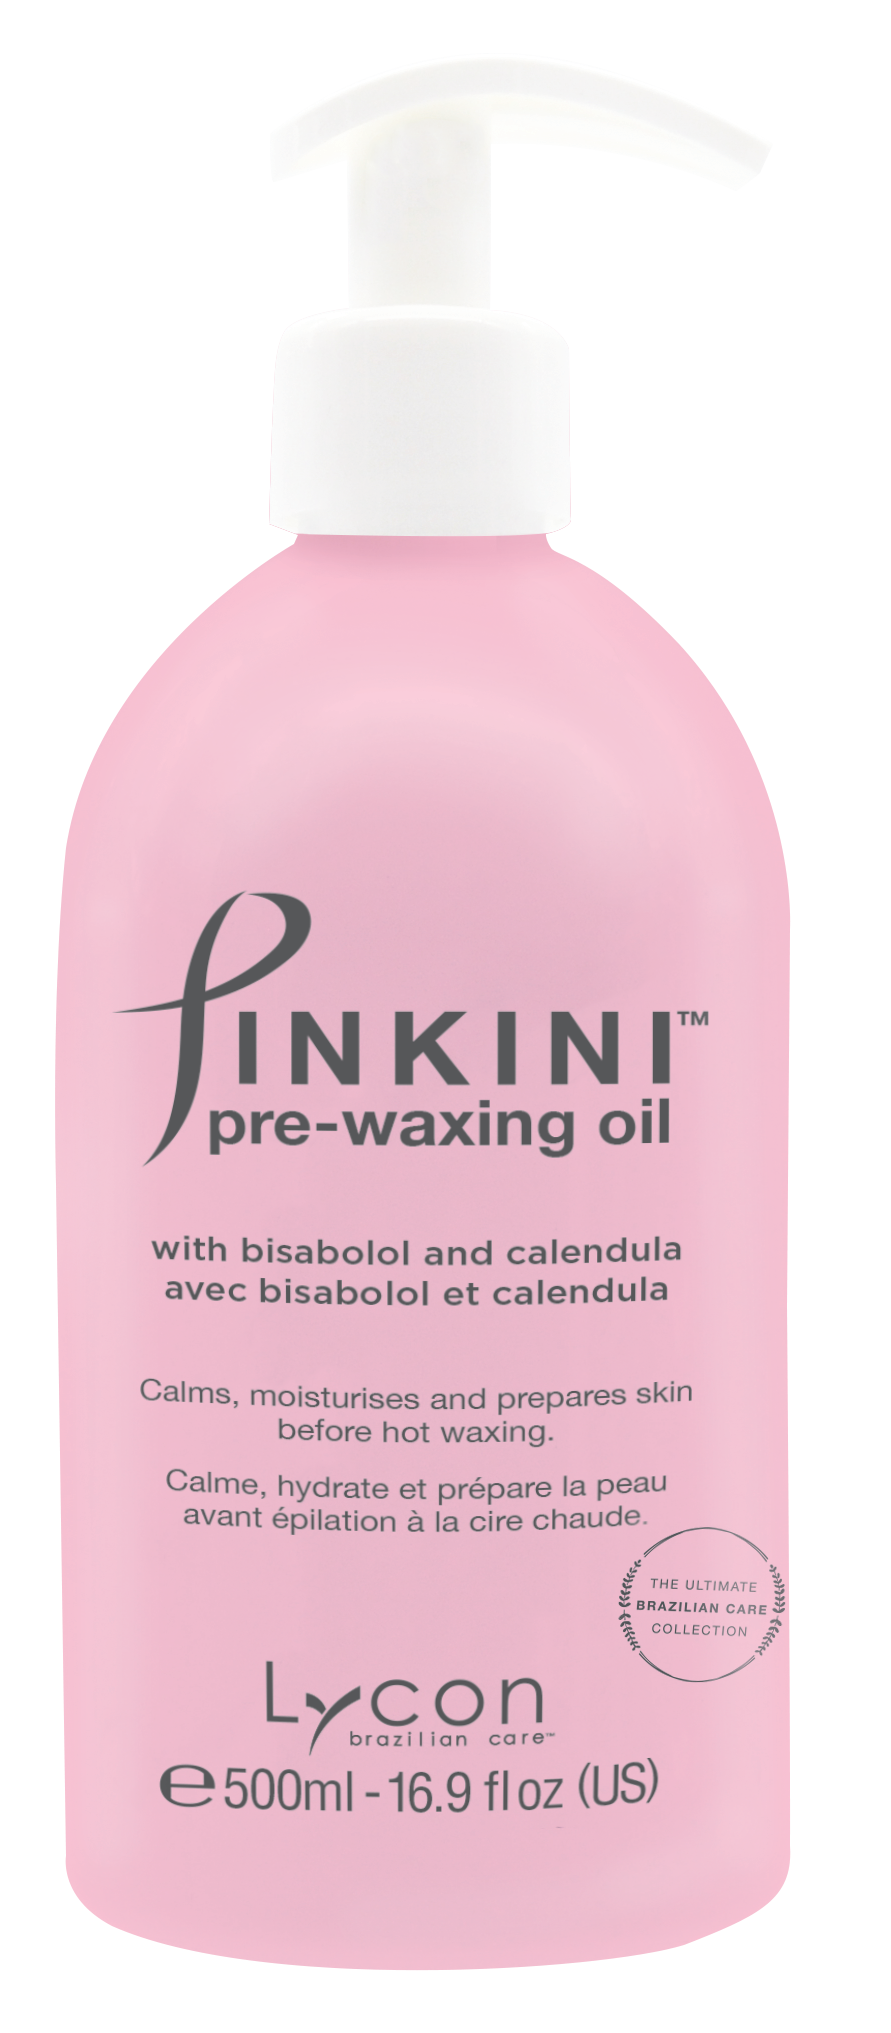 Pinkini Brazilian Care Kit - Perfect Wax kit for Bikini Waxing